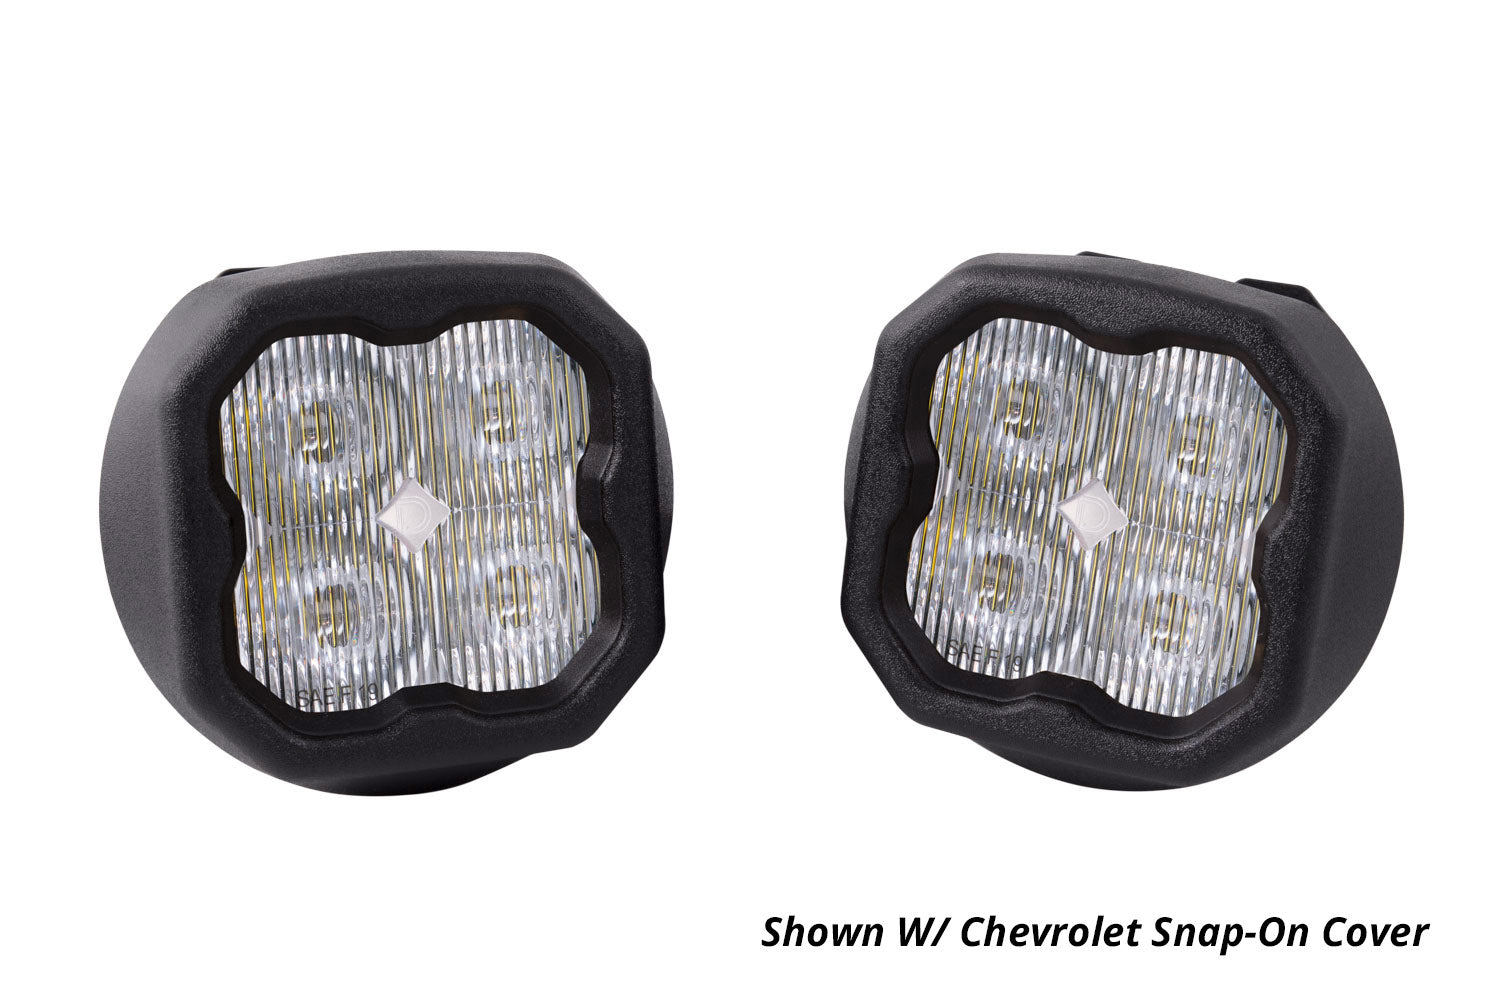 SS3 LED Fog Light Kit for 2007-2015 Chevrolet Avalanche White SAE Fog Pro Diode Dynamics